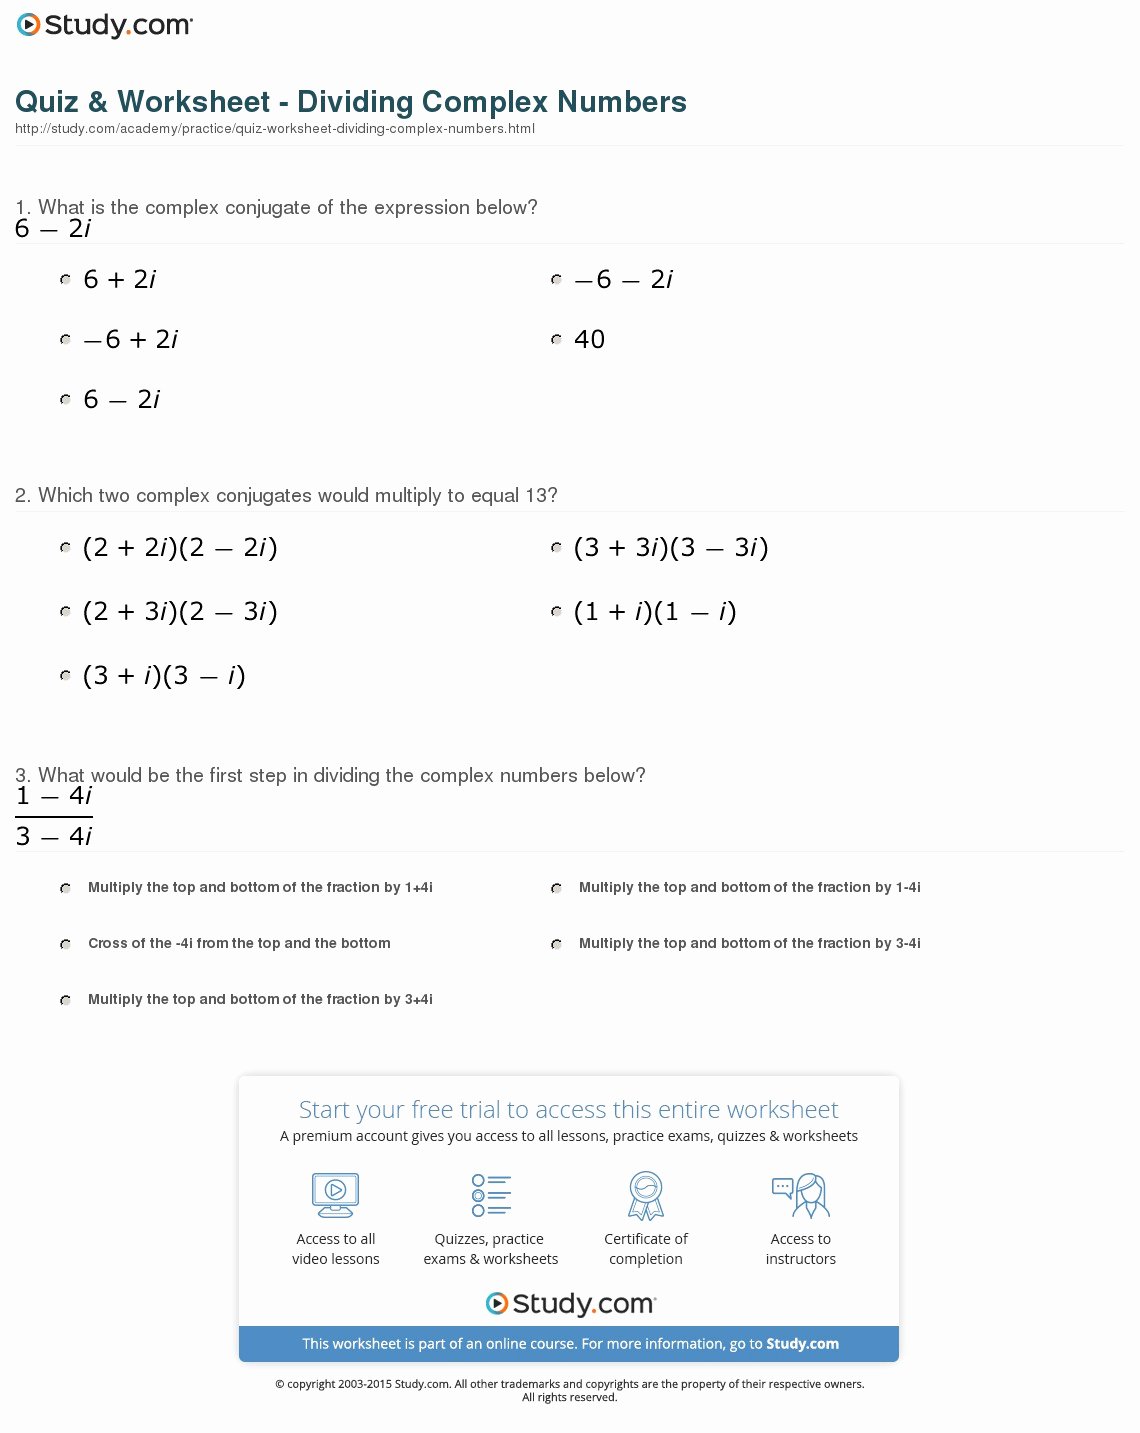 Multiplying Complex Numbers Worksheet Fresh Quiz & Worksheet Dividing Plex Numbers